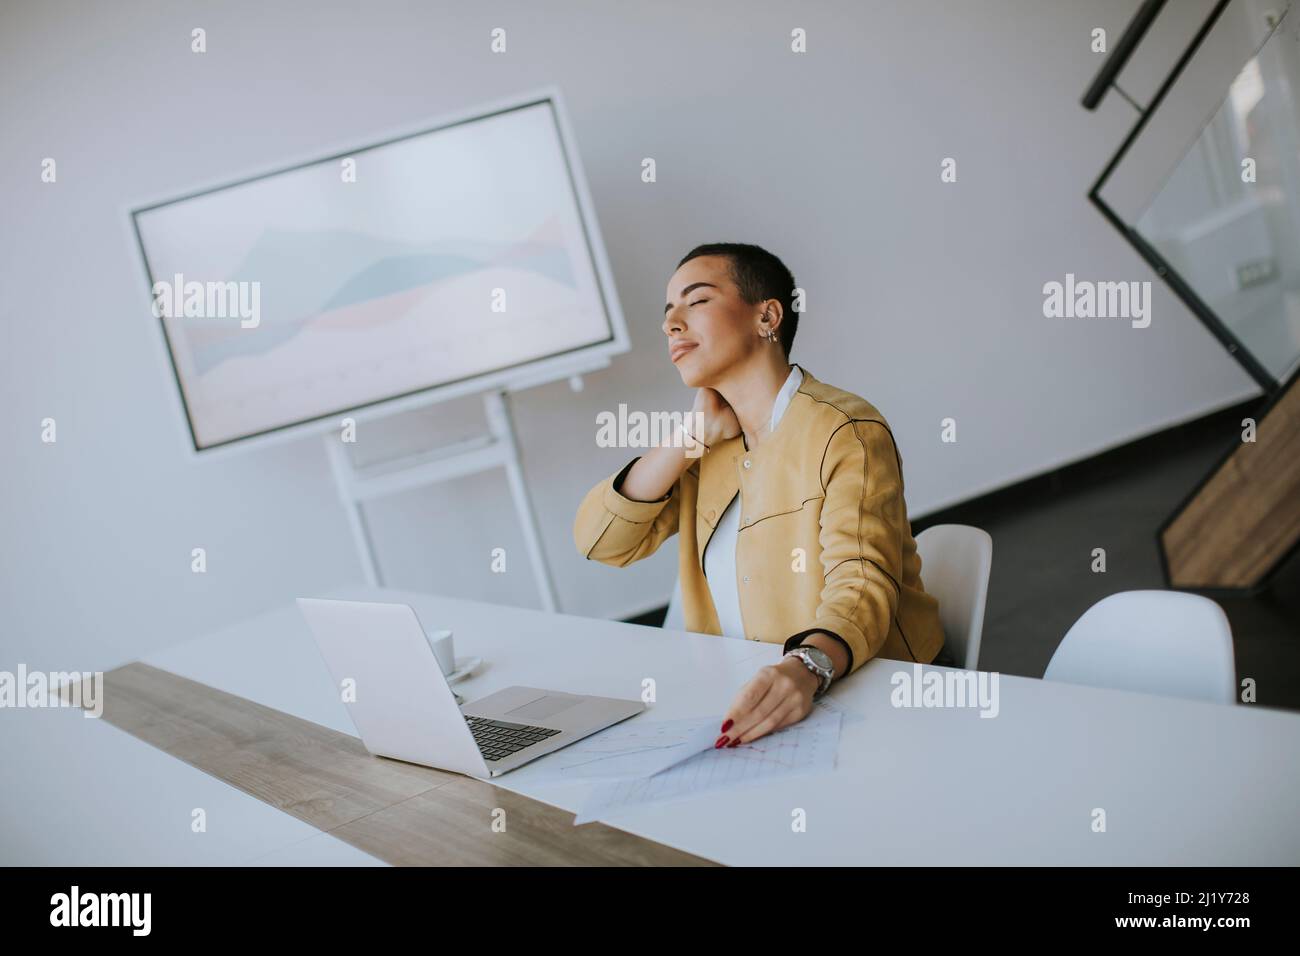 Müde junge Frau mit kurzen Haaren, die am Laptop arbeitet, während sie im Büro sitzt Stockfoto